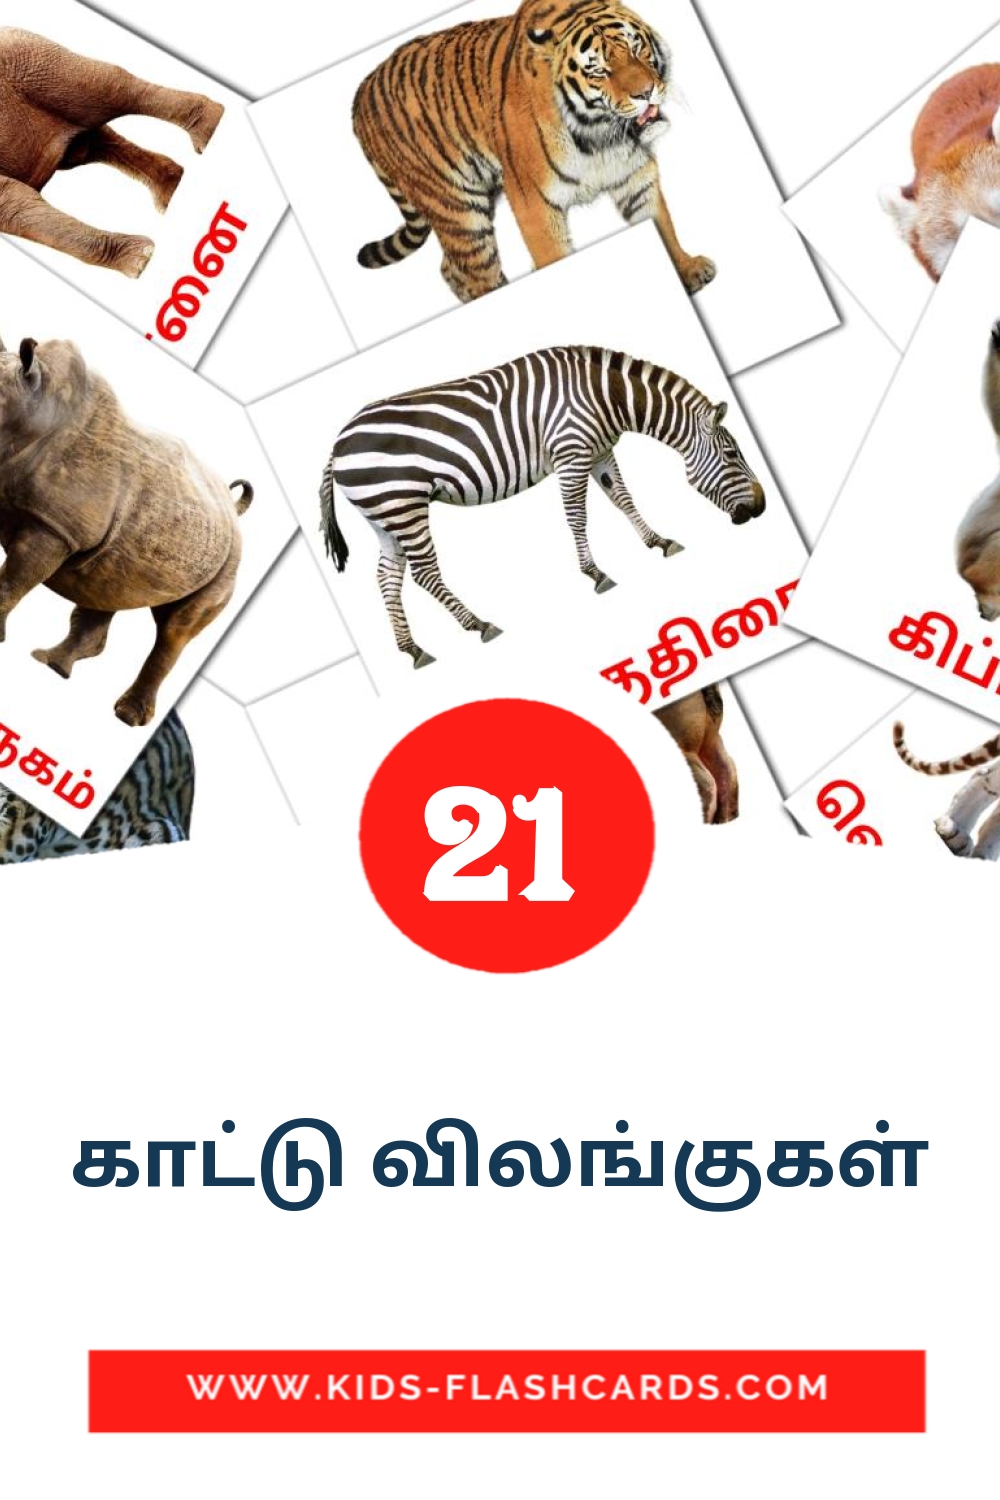 21 காட்டு விலங்குகள் fotokaarten voor kleuters in het tamil